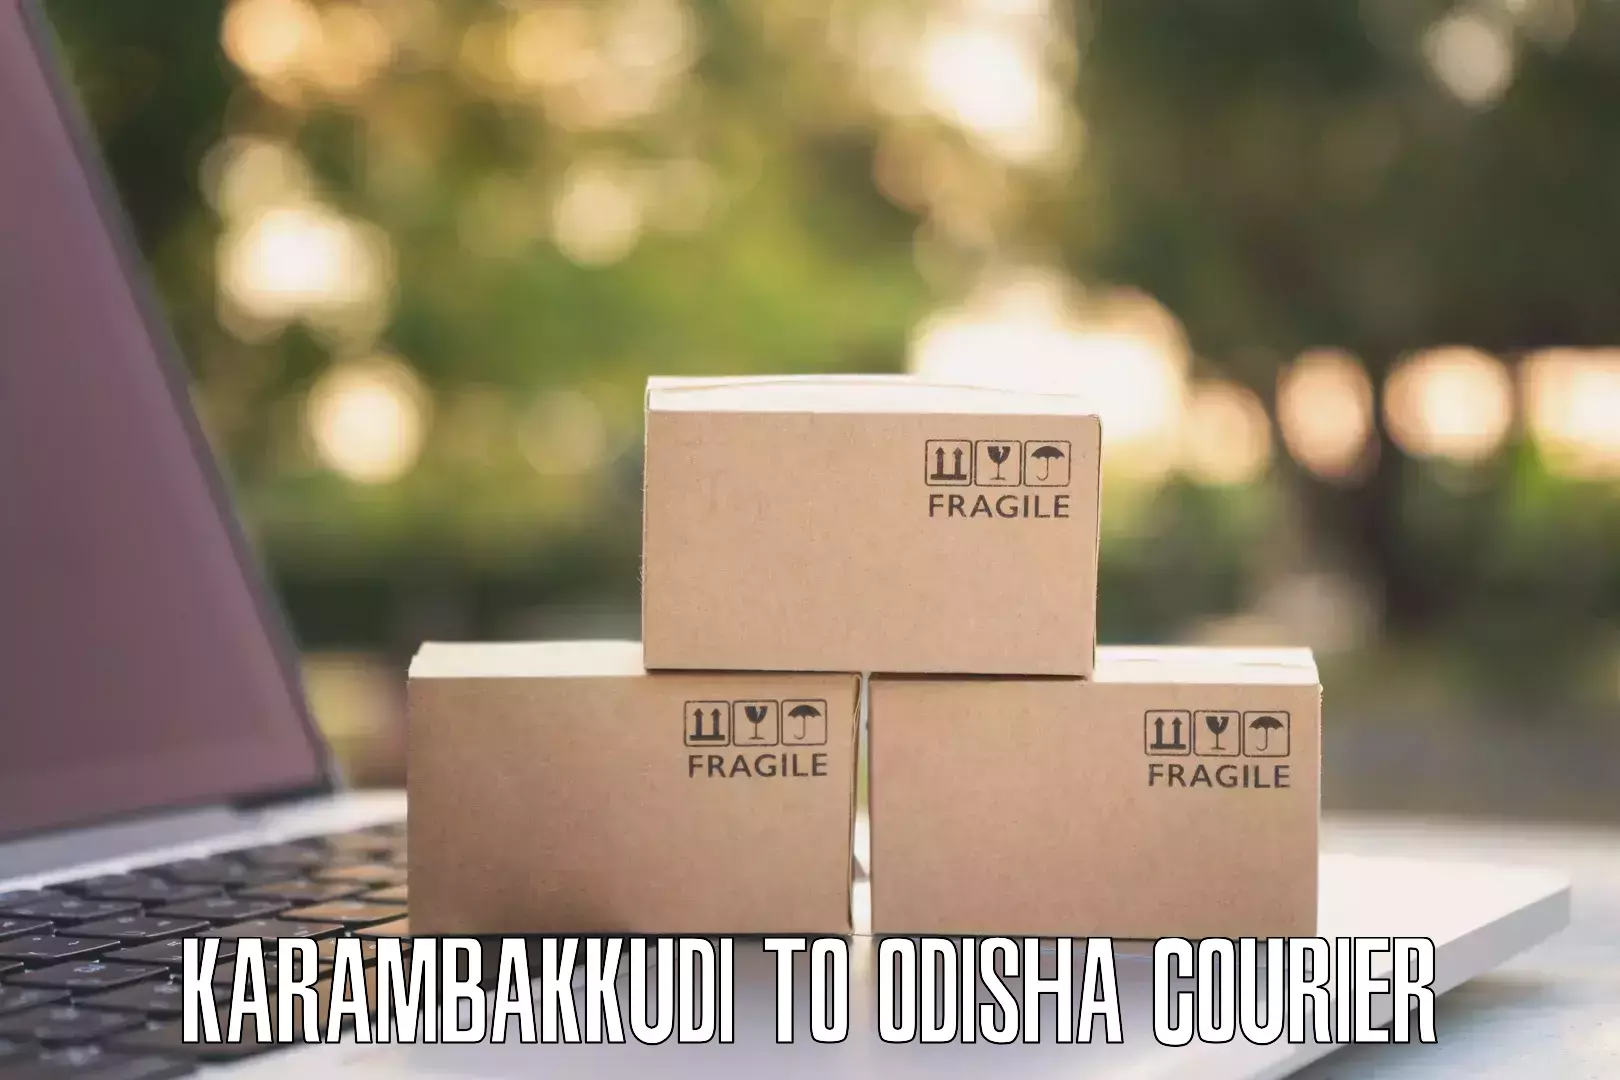 Easy access courier services Karambakkudi to Nirakarpur